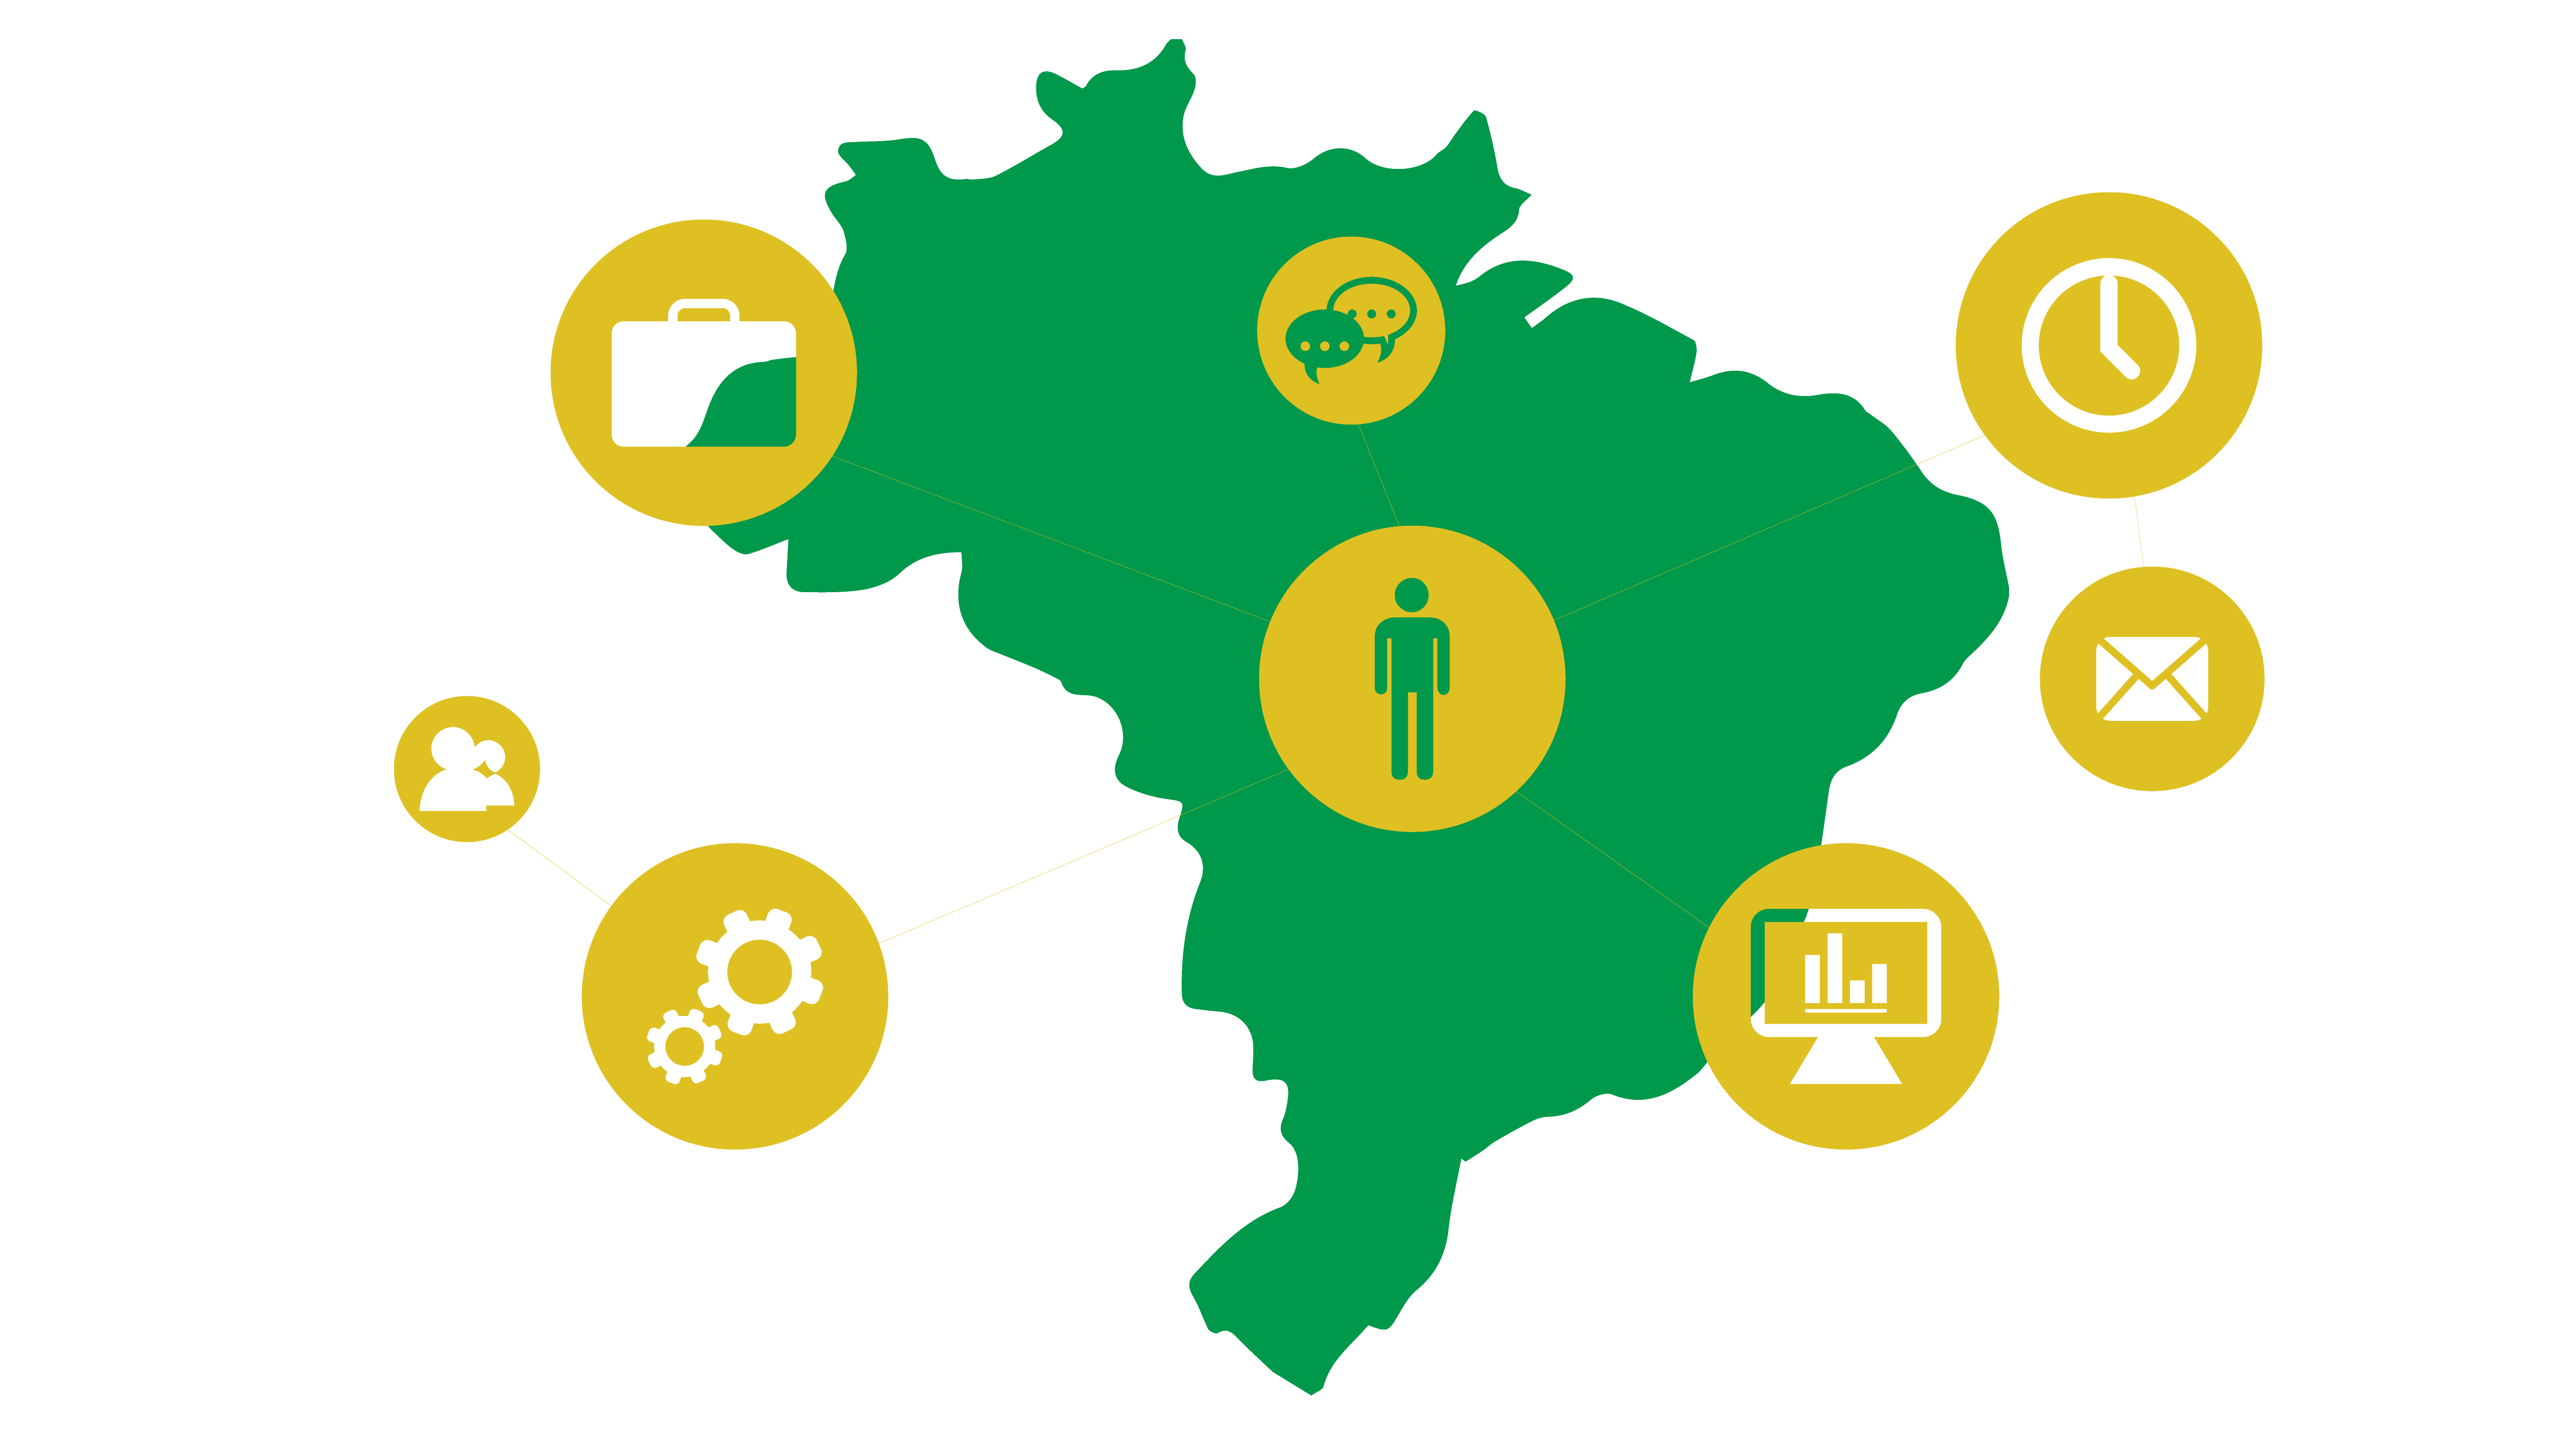 #feacacessivel Imagem mostra um mapa do Brasil, sobreposto por diferentes tipos de gráficos e números